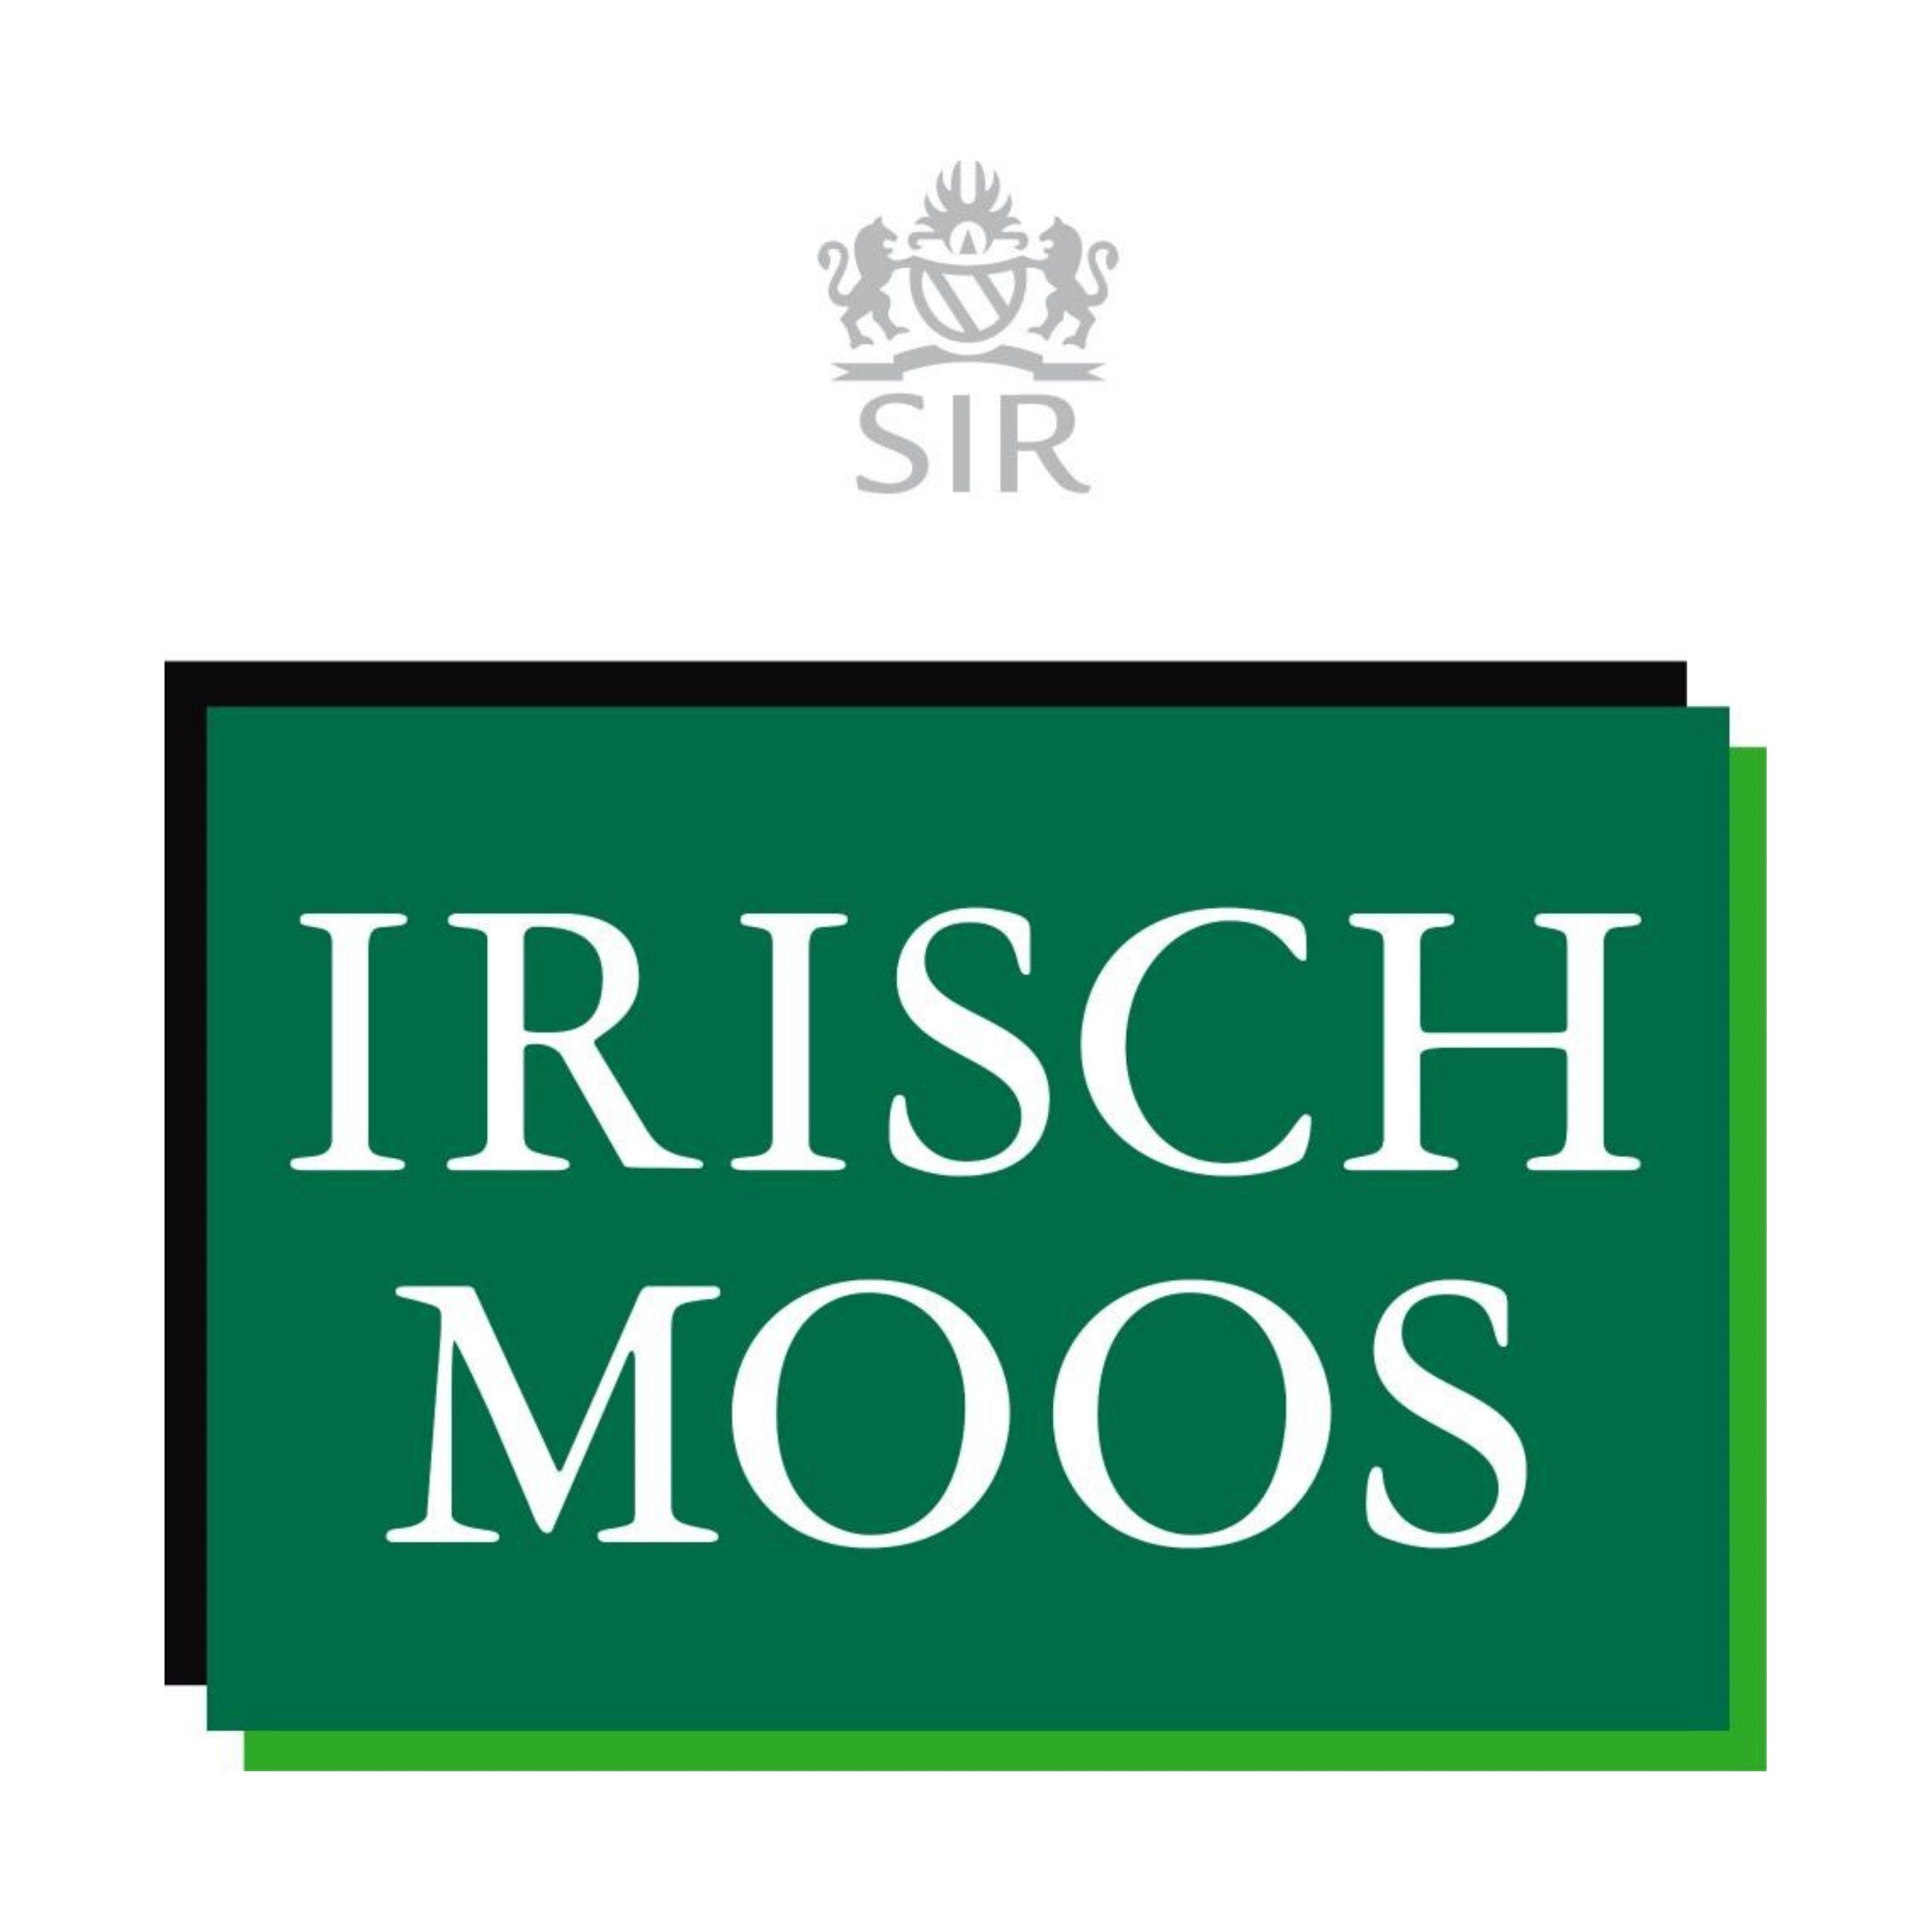 Sir 150 Moos Lotion SIR After ml Shave Irisch MOOS IRISCH Gesichts-Reinigungslotion